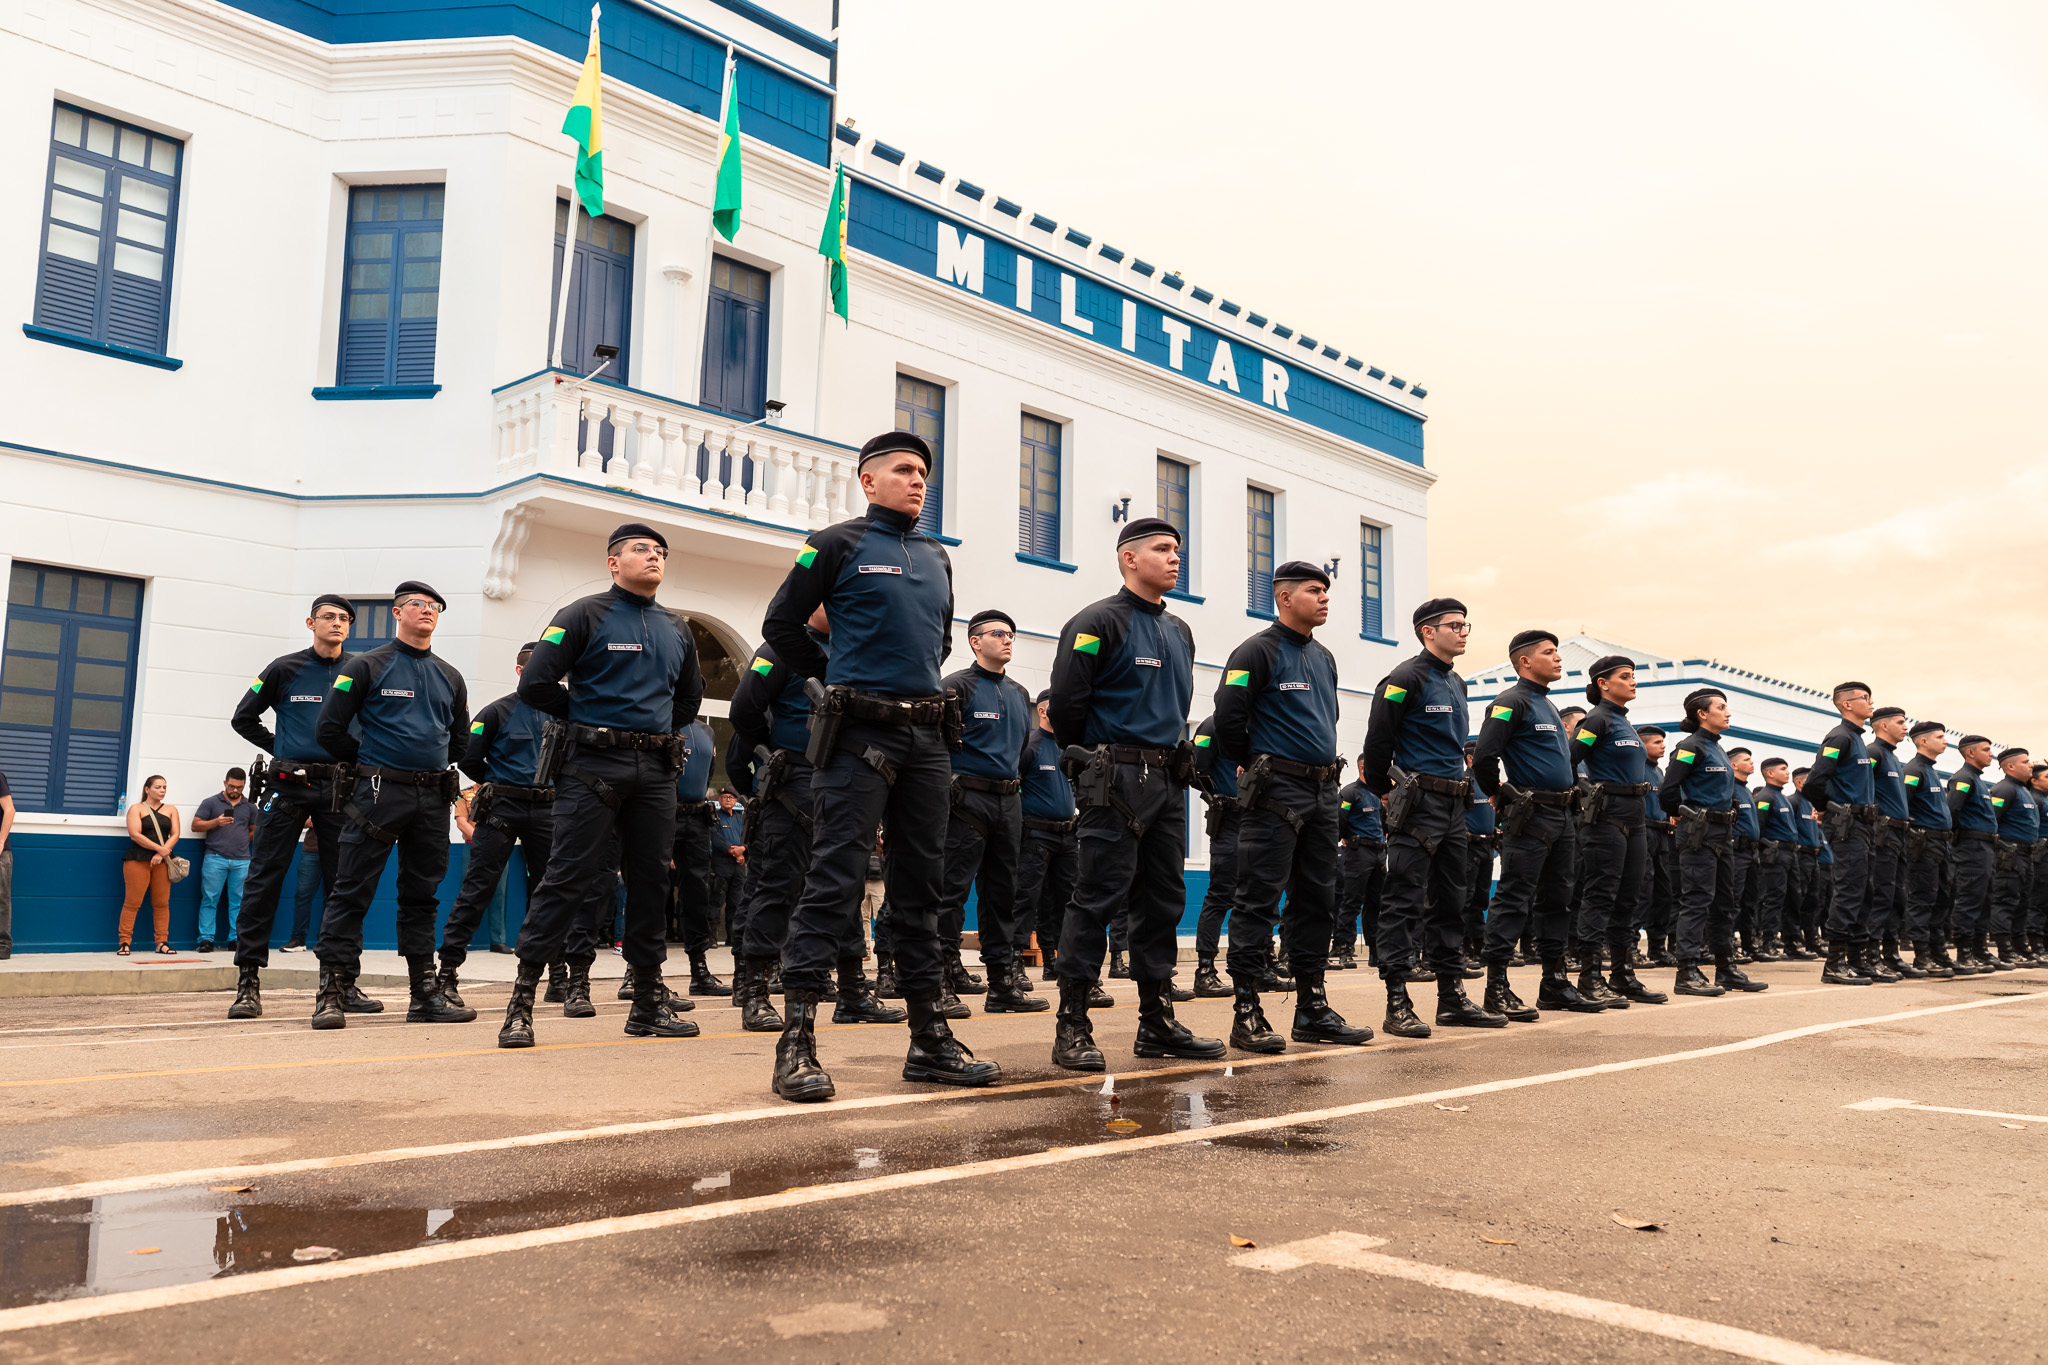 Polícia Militar atuará na segurança e terá estande na Expoacre 2023